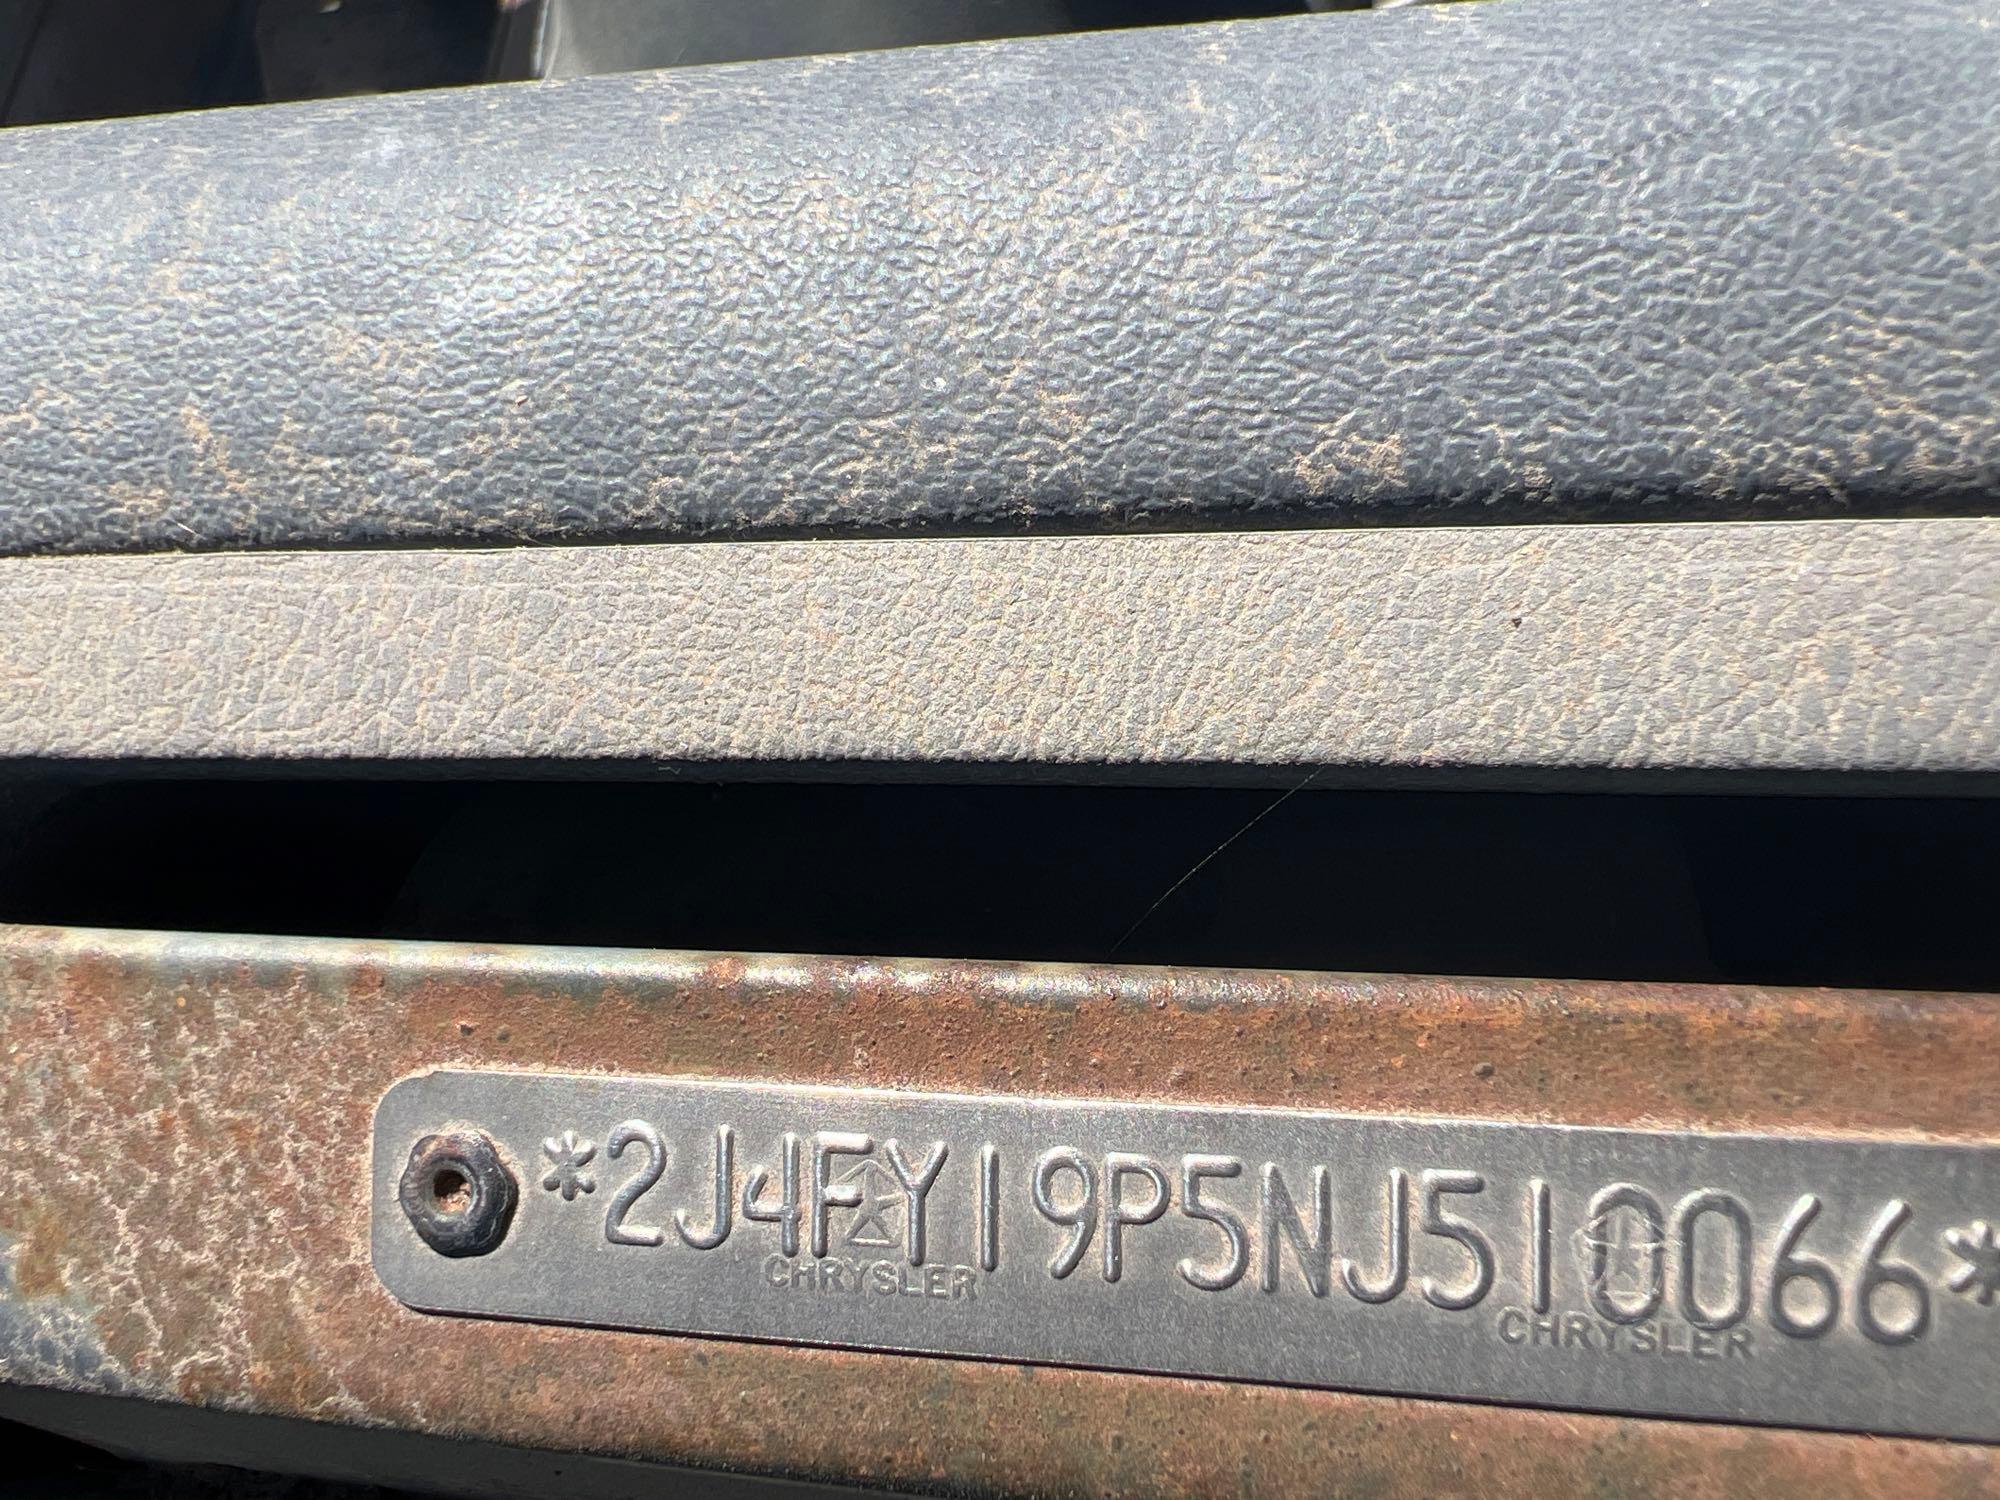 1992 Jeep Wrangler Multipurpose Vehicle (MPV), VIN # 2J4FY19P5NJ510066